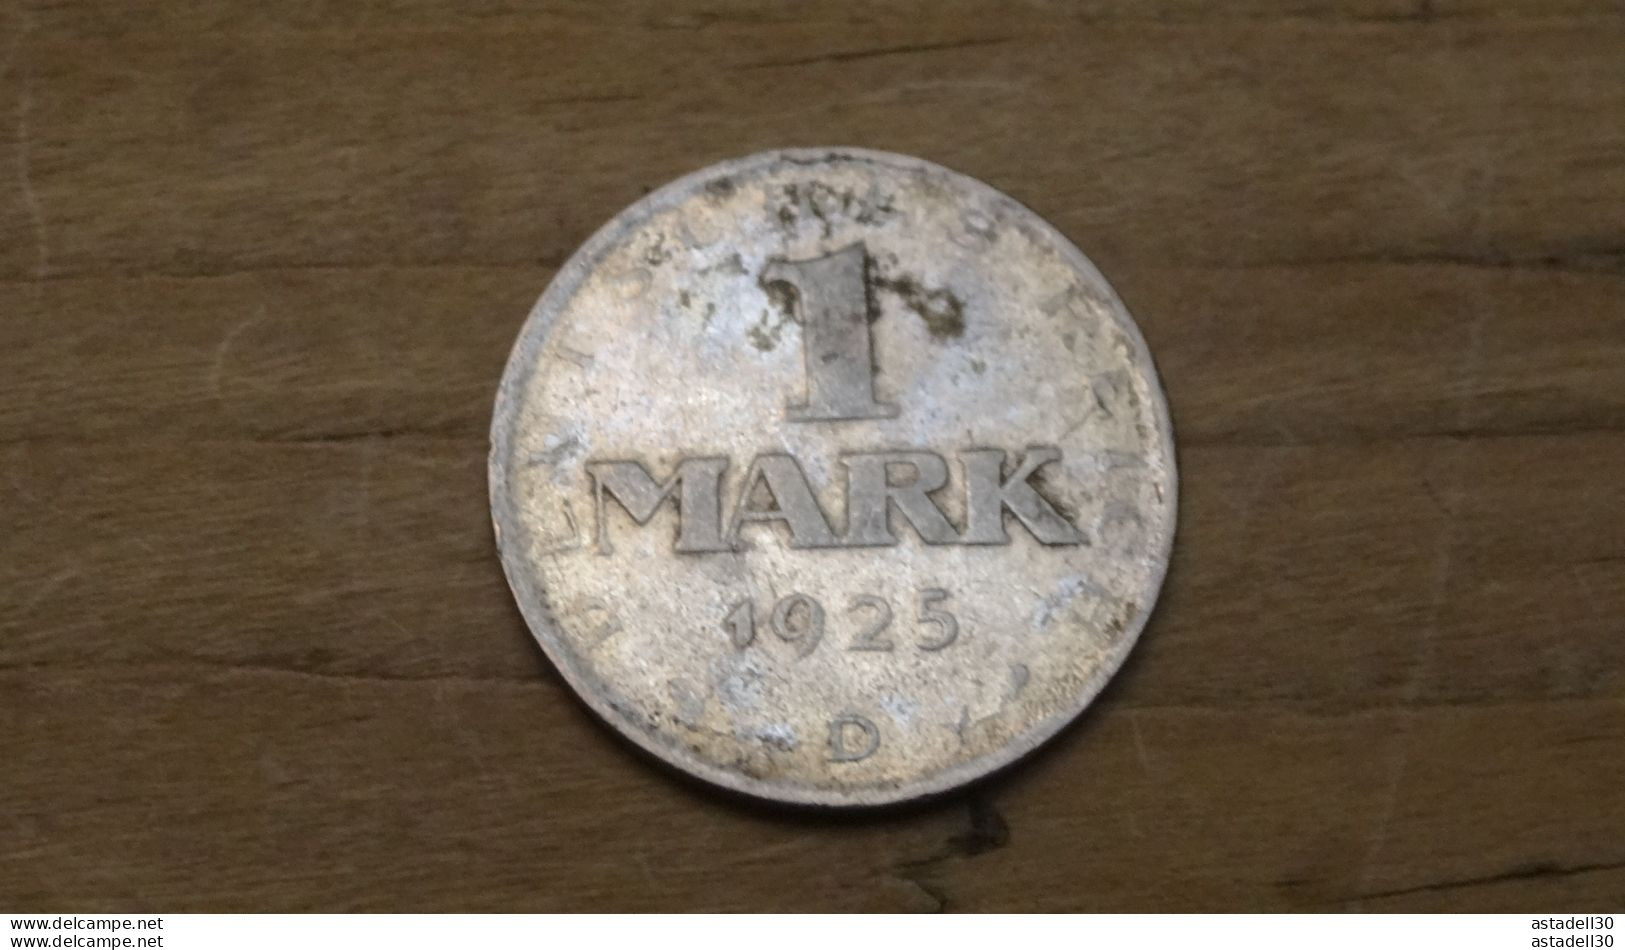 DEUTSCHLAND, 1 Mark 1925D  ......PHI....  ALL-15 - 1 Mark & 1 Reichsmark